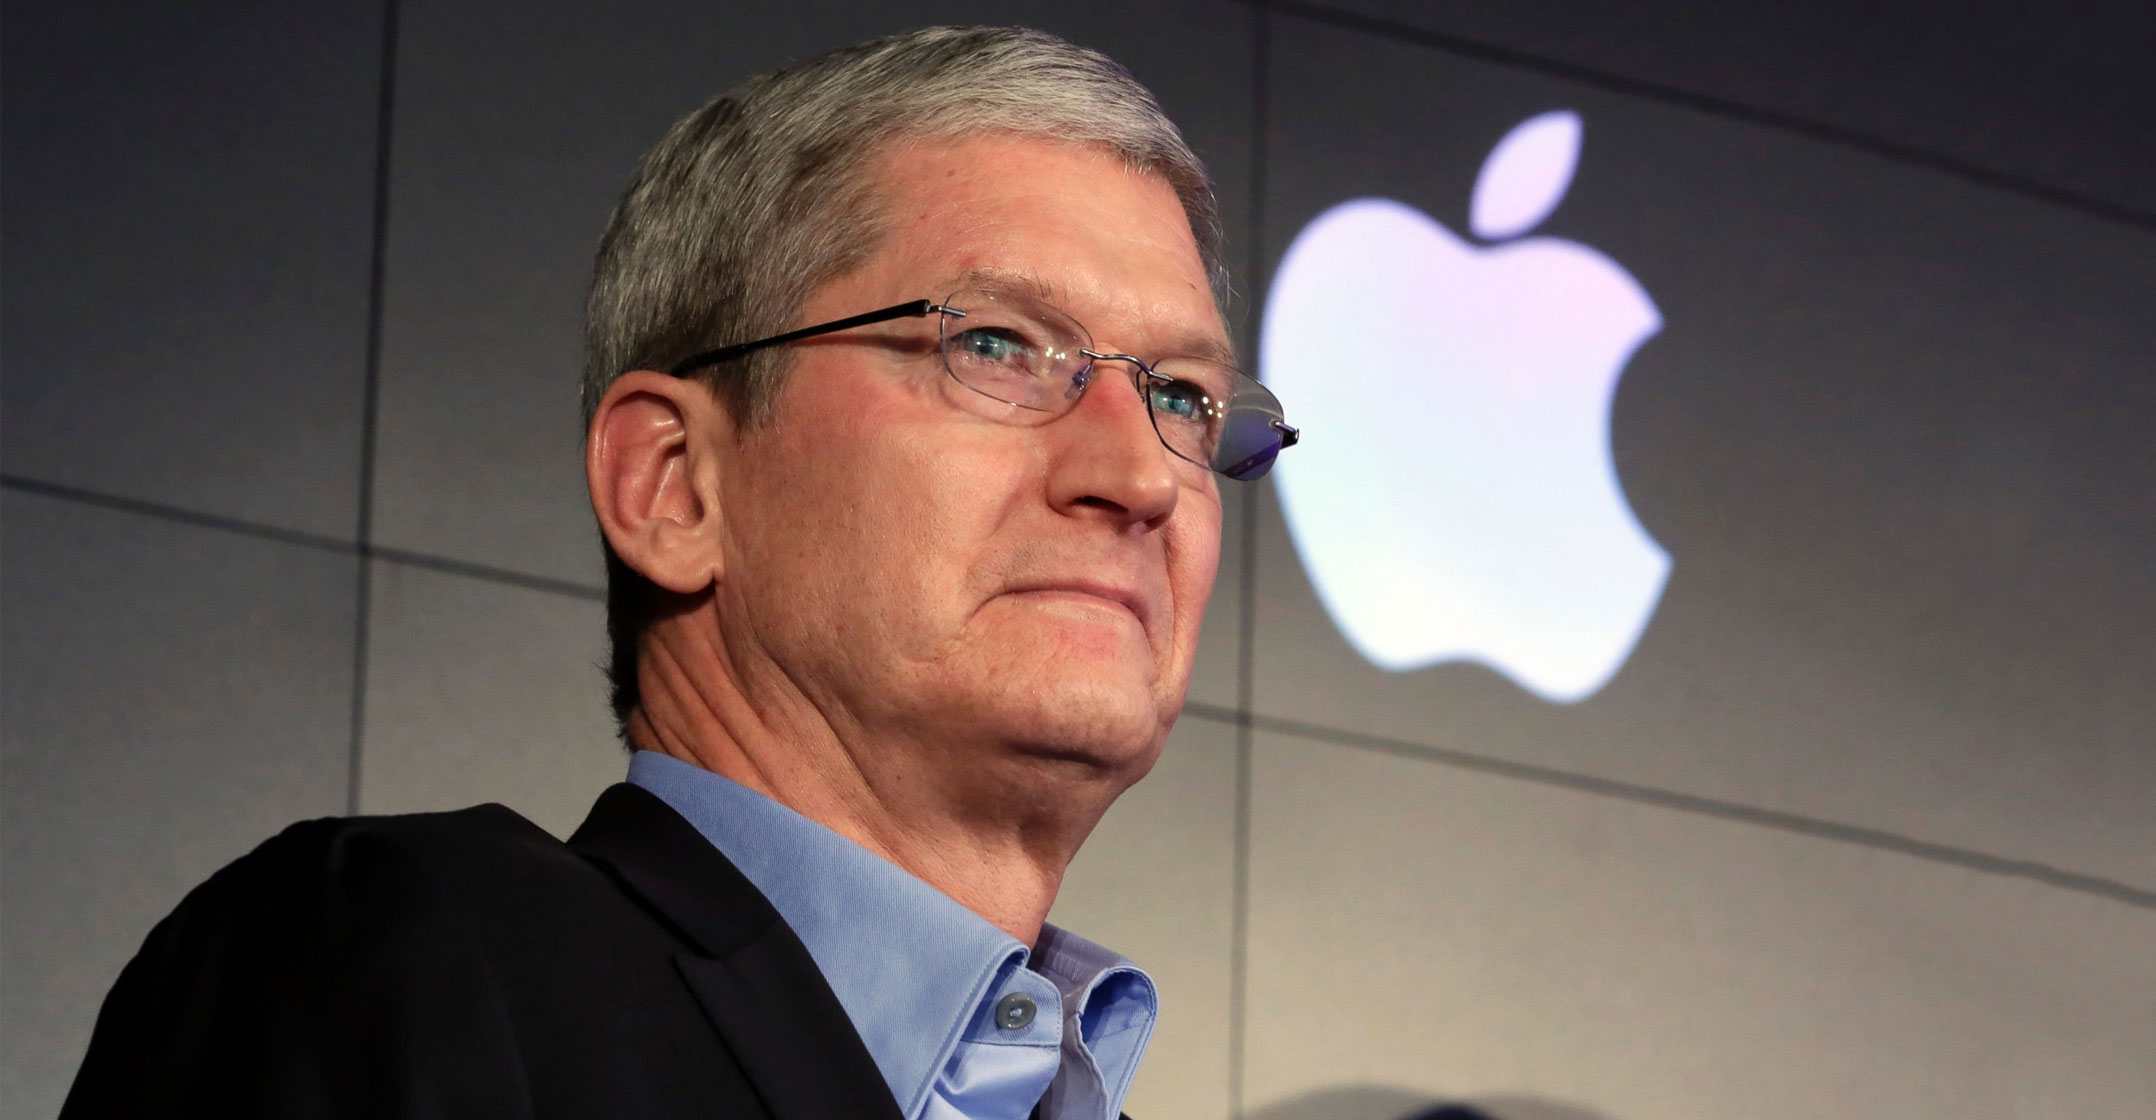 Jabat CEO Apple Selama 10 Tahun, Tim Cook Diberi Bonus Rp 10 Triliun